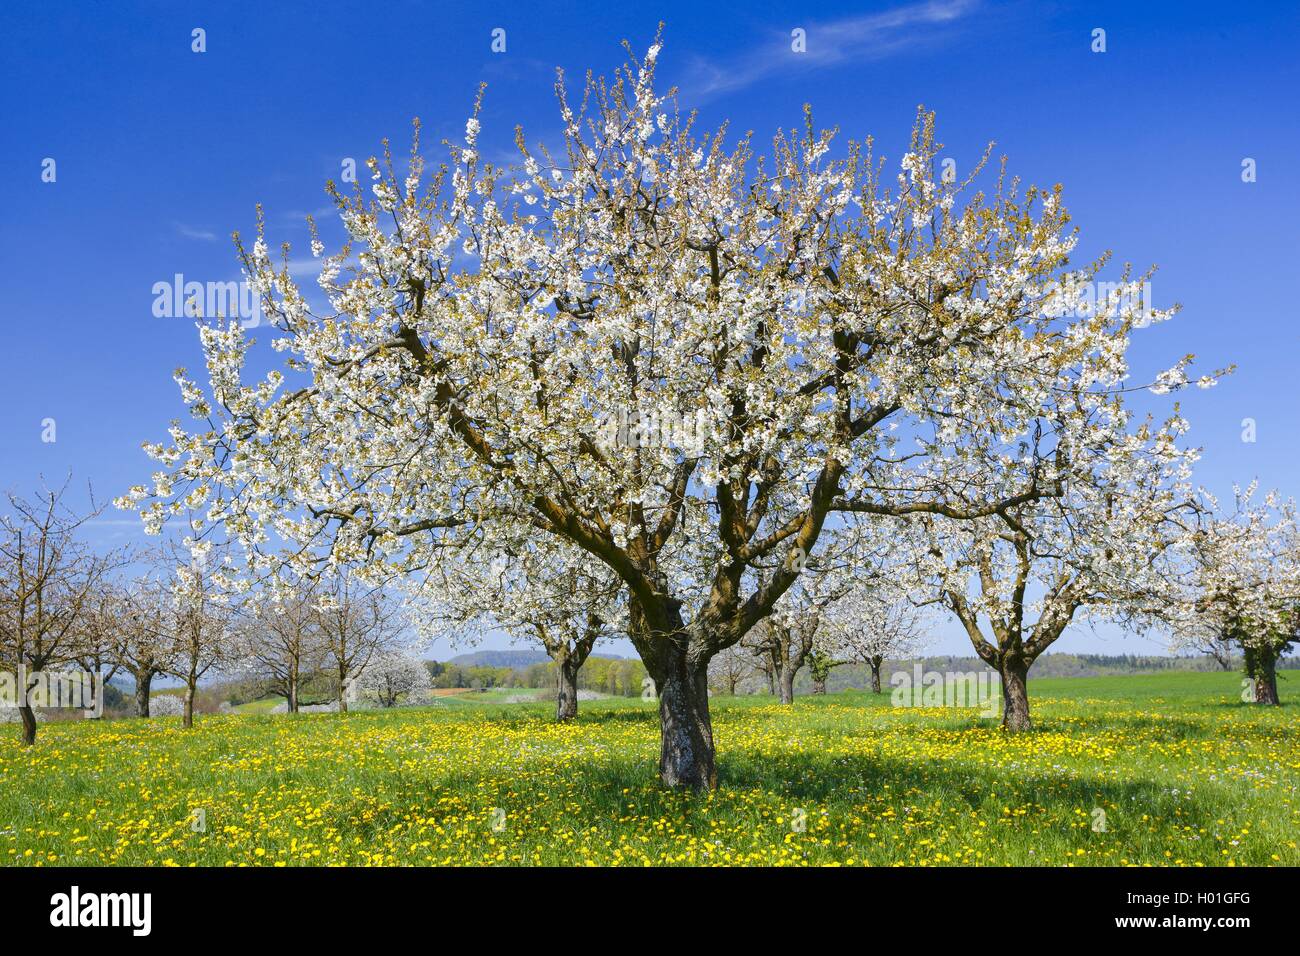 Cherry tree, Sweet cherry (Prunus avium), blooming cherry trees, Switzerland Stock Photo